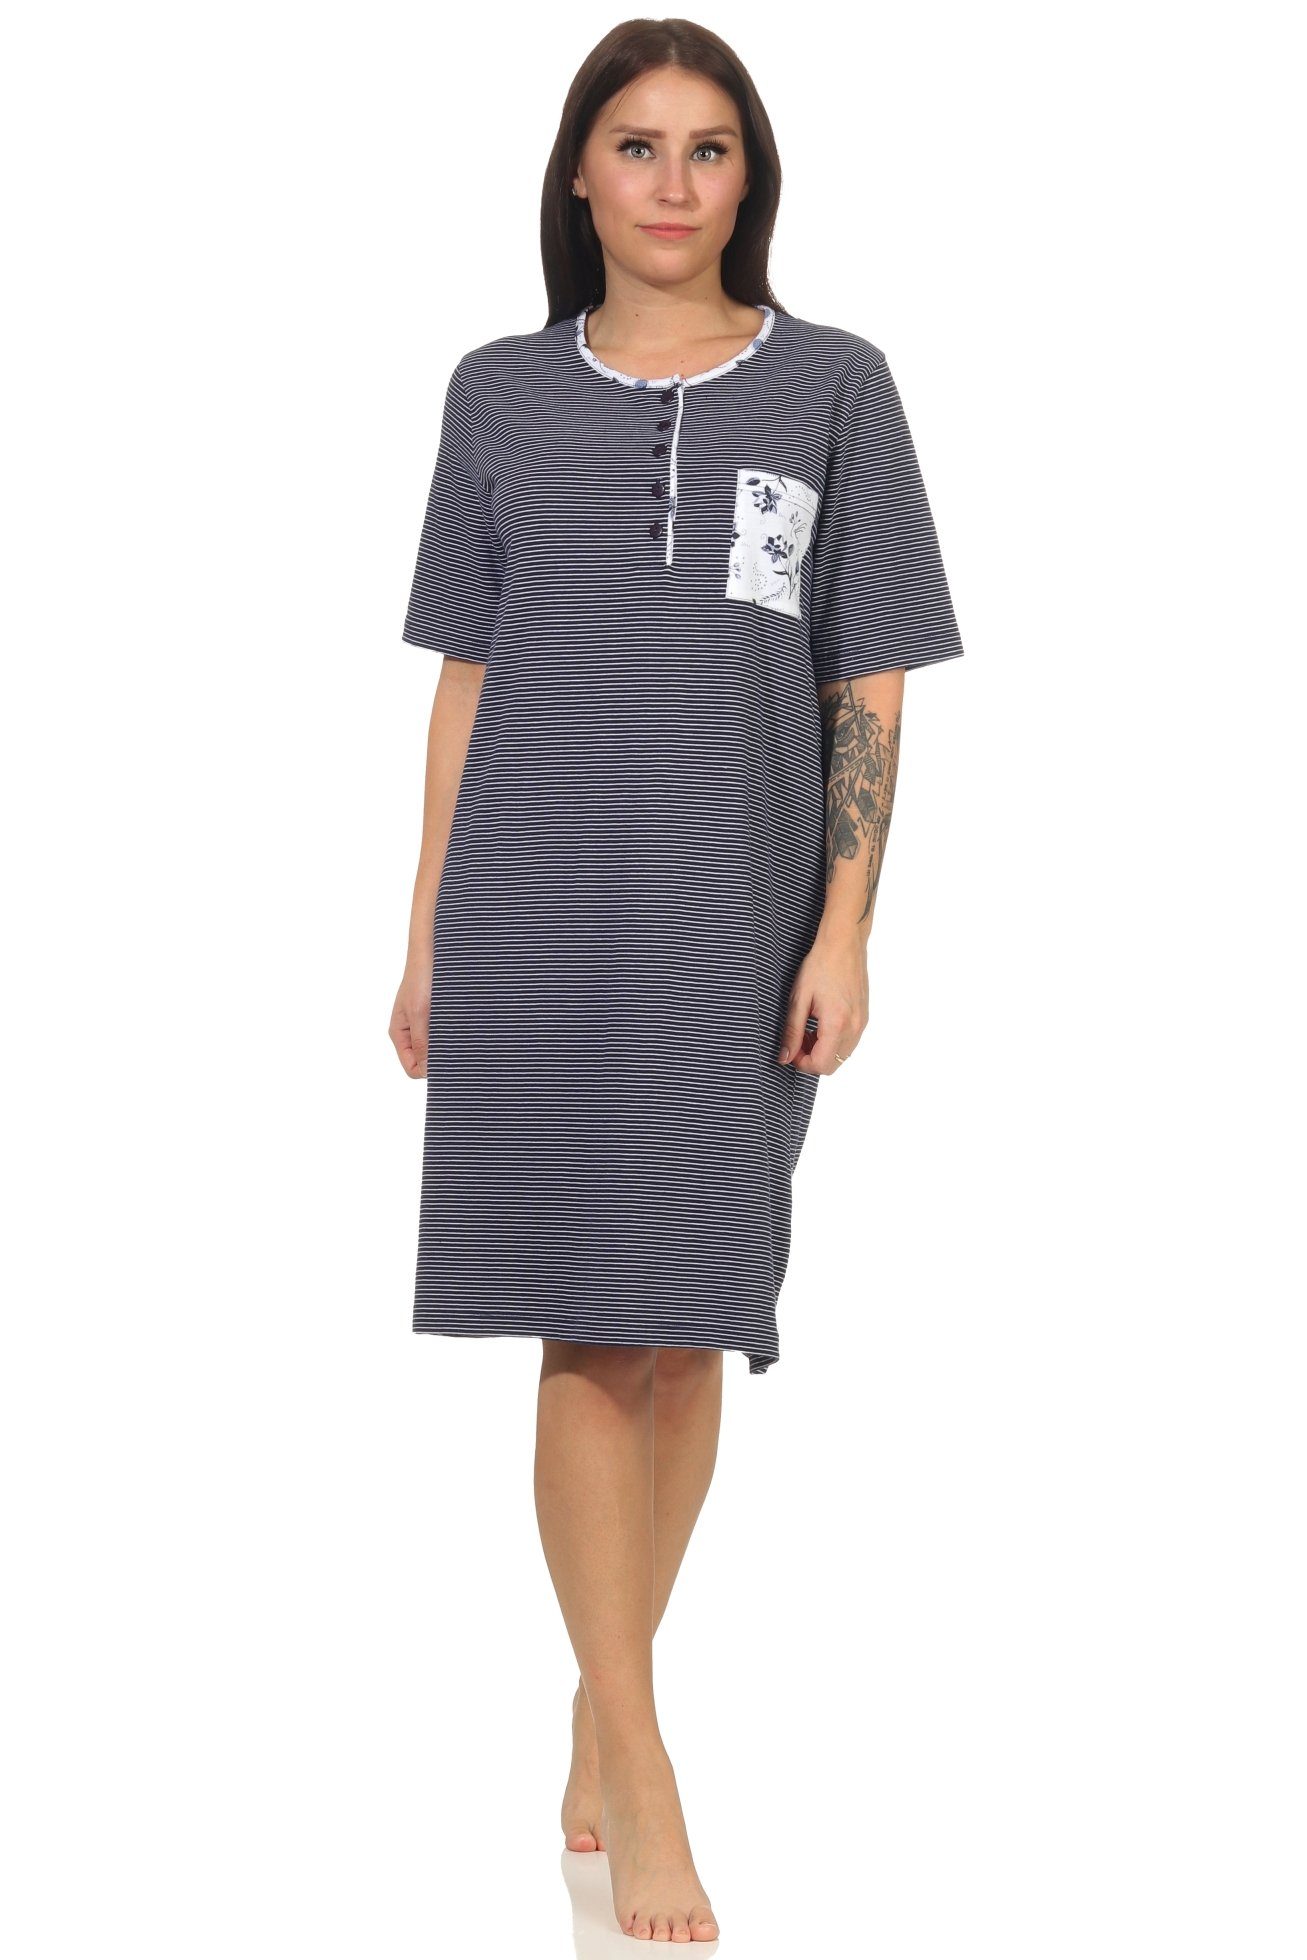 Normann Nachthemd »Damen Nachthemd mit kurzen Ärmeln und mit Knopfleiste am  Hals in feiner Streifen Optik«